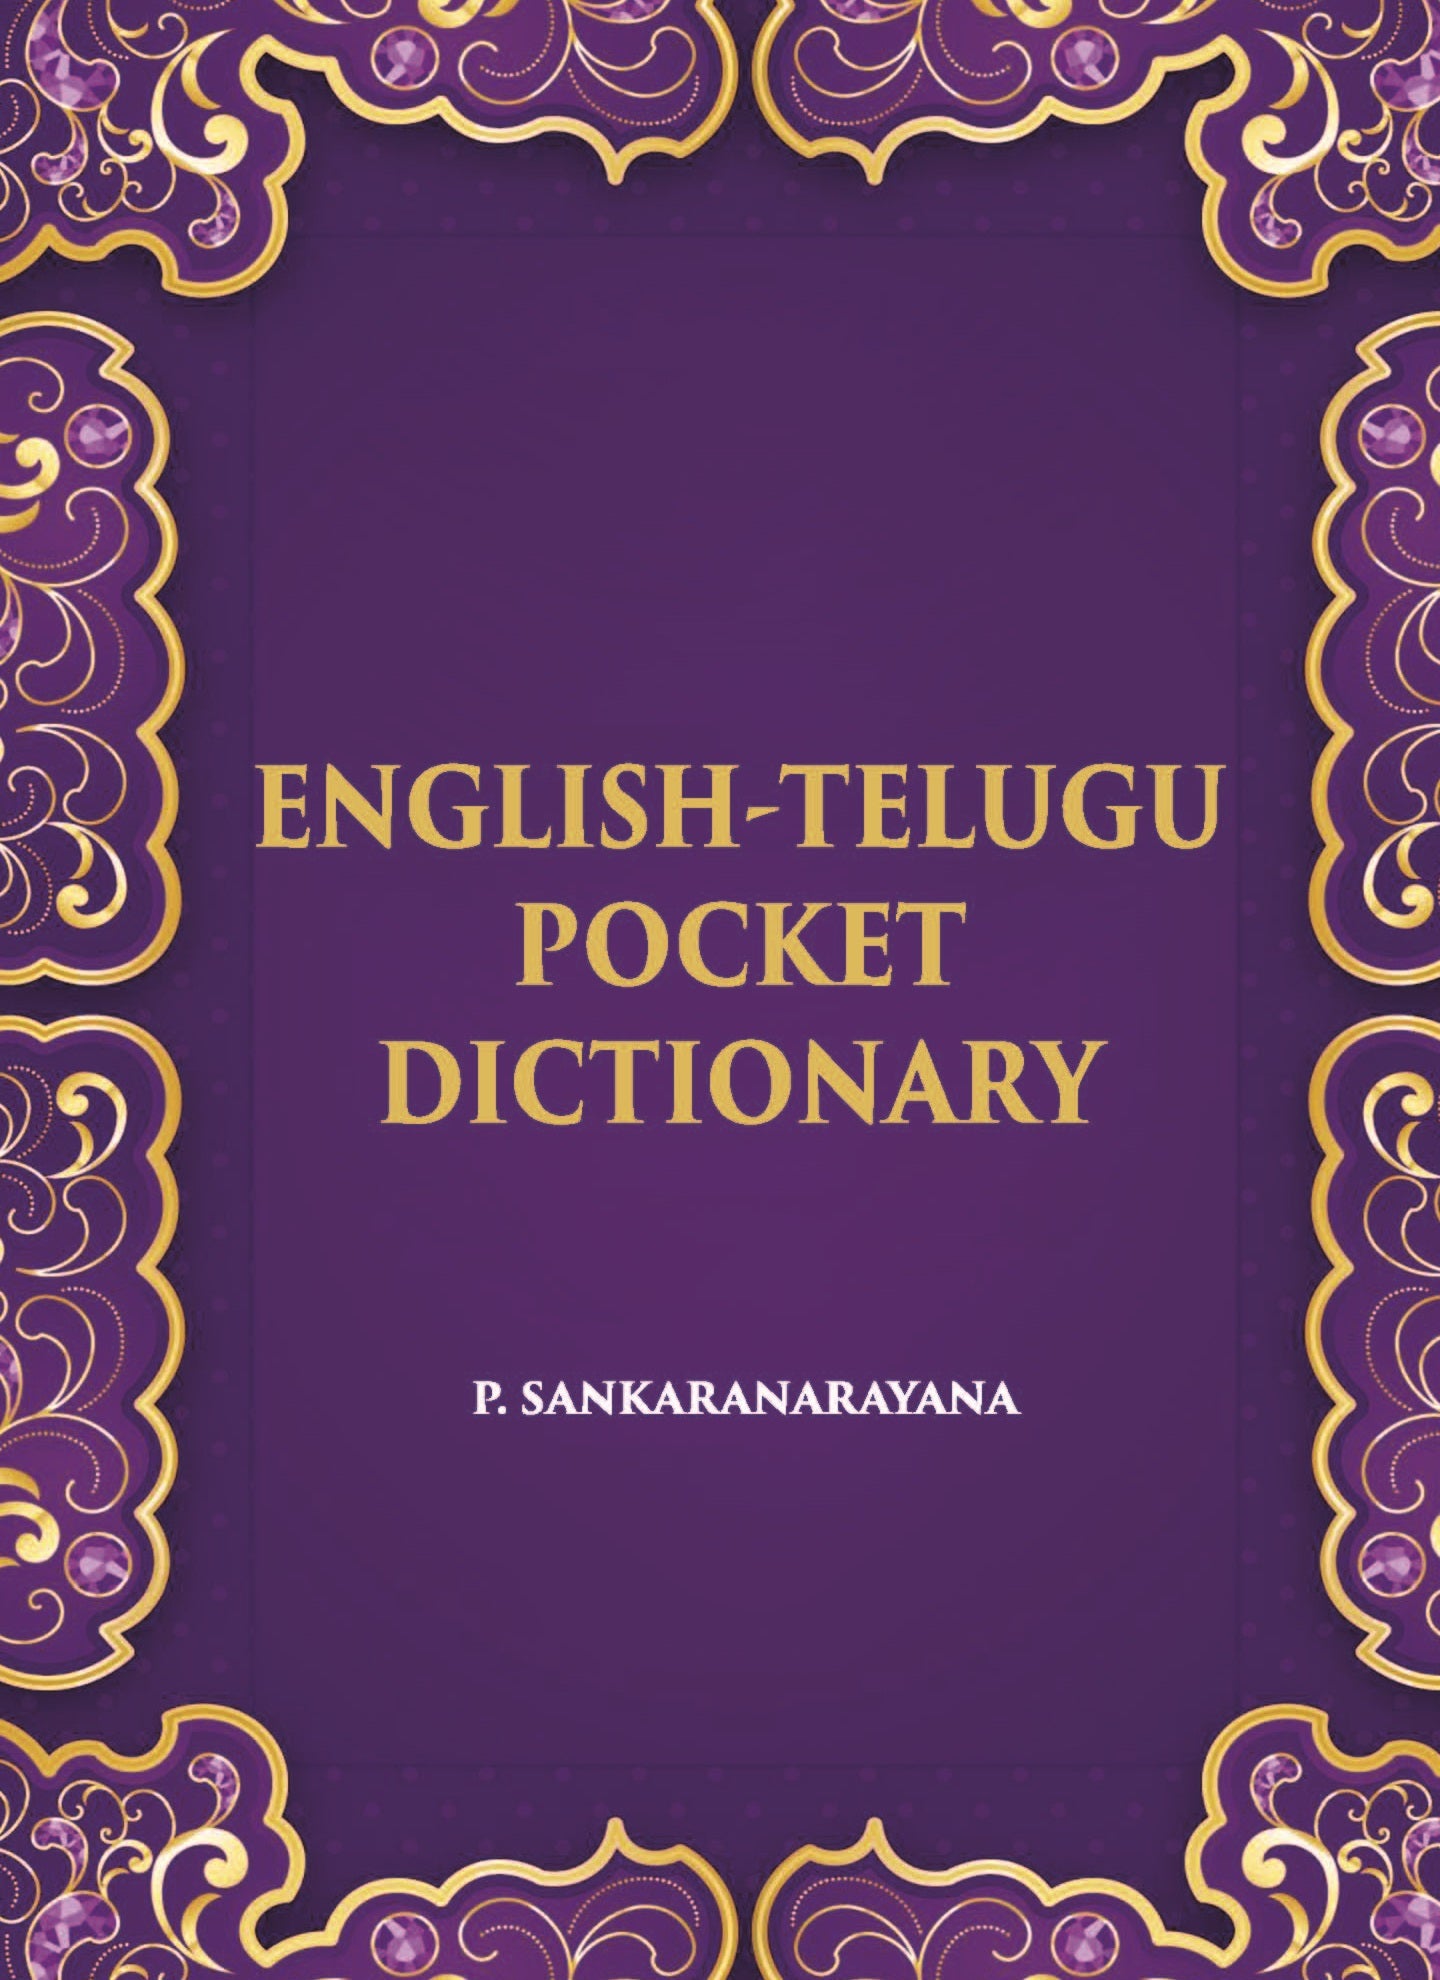 English-Telugu Pocket Dictionary